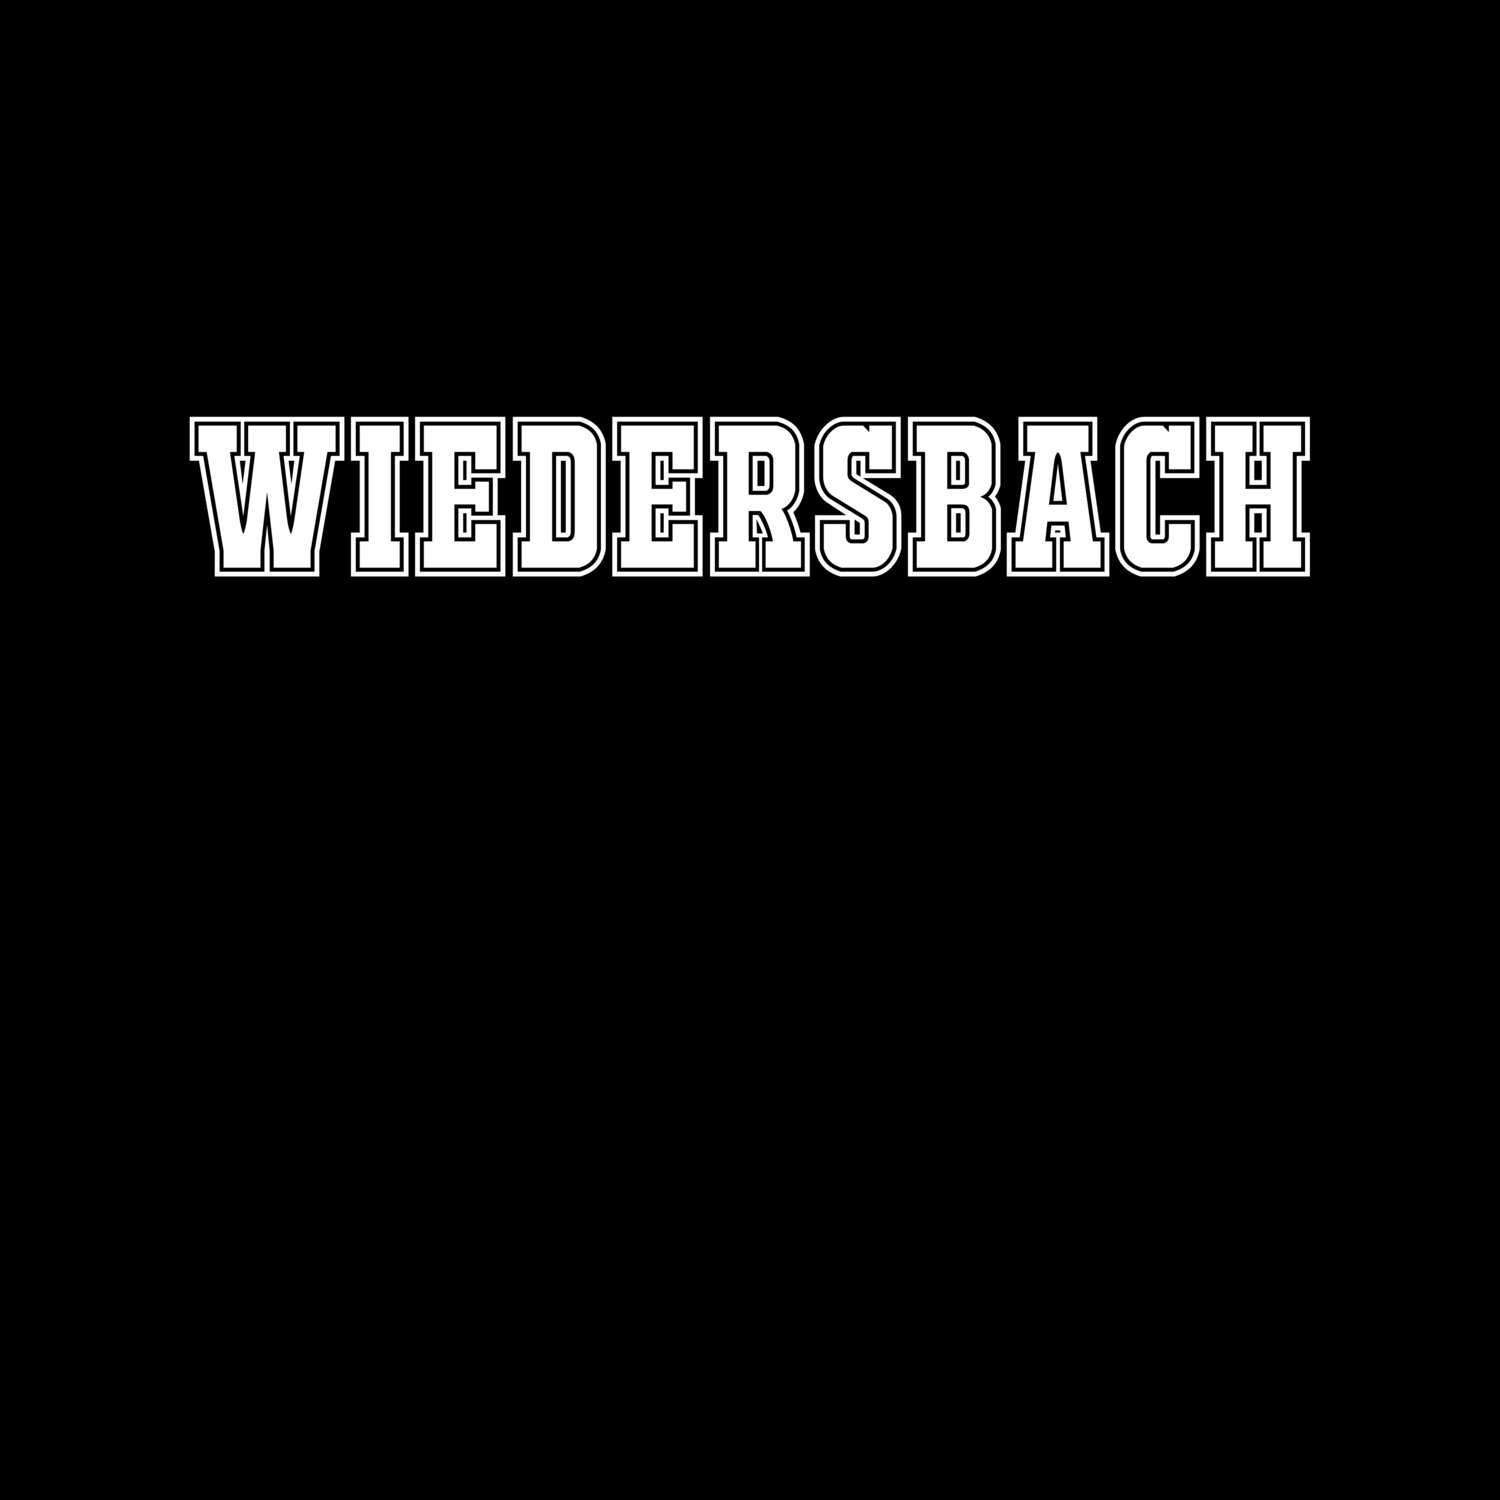 Wiedersbach T-Shirt »Classic«